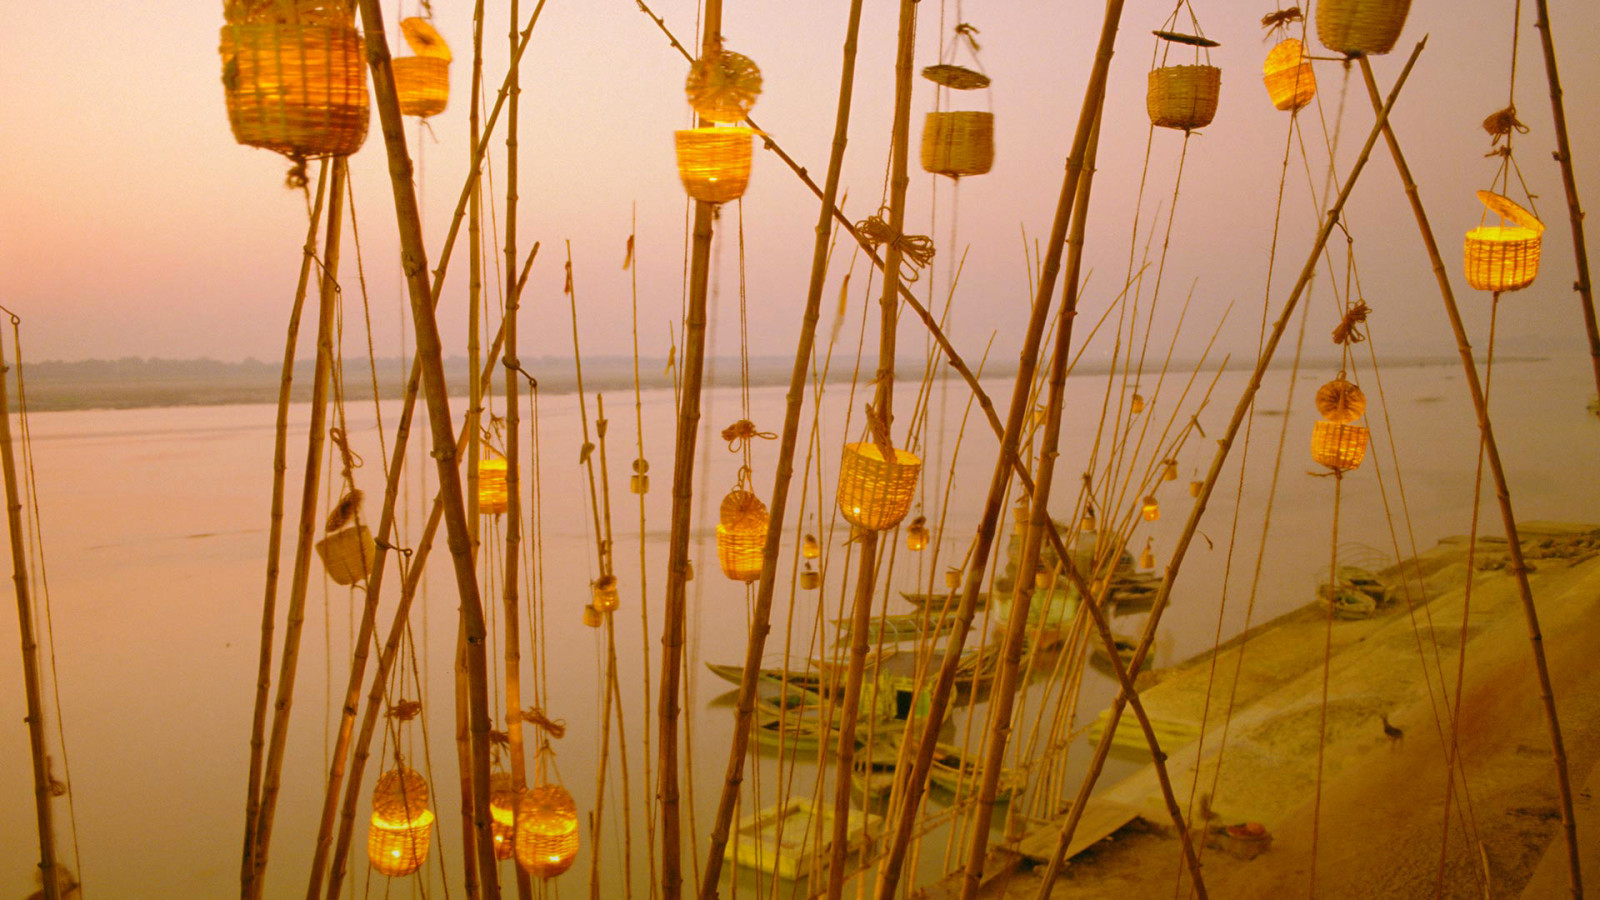 อินเดีย, แม่น้ำคงคา, เทศกาลโคมไฟ, อุตตรประเทศ